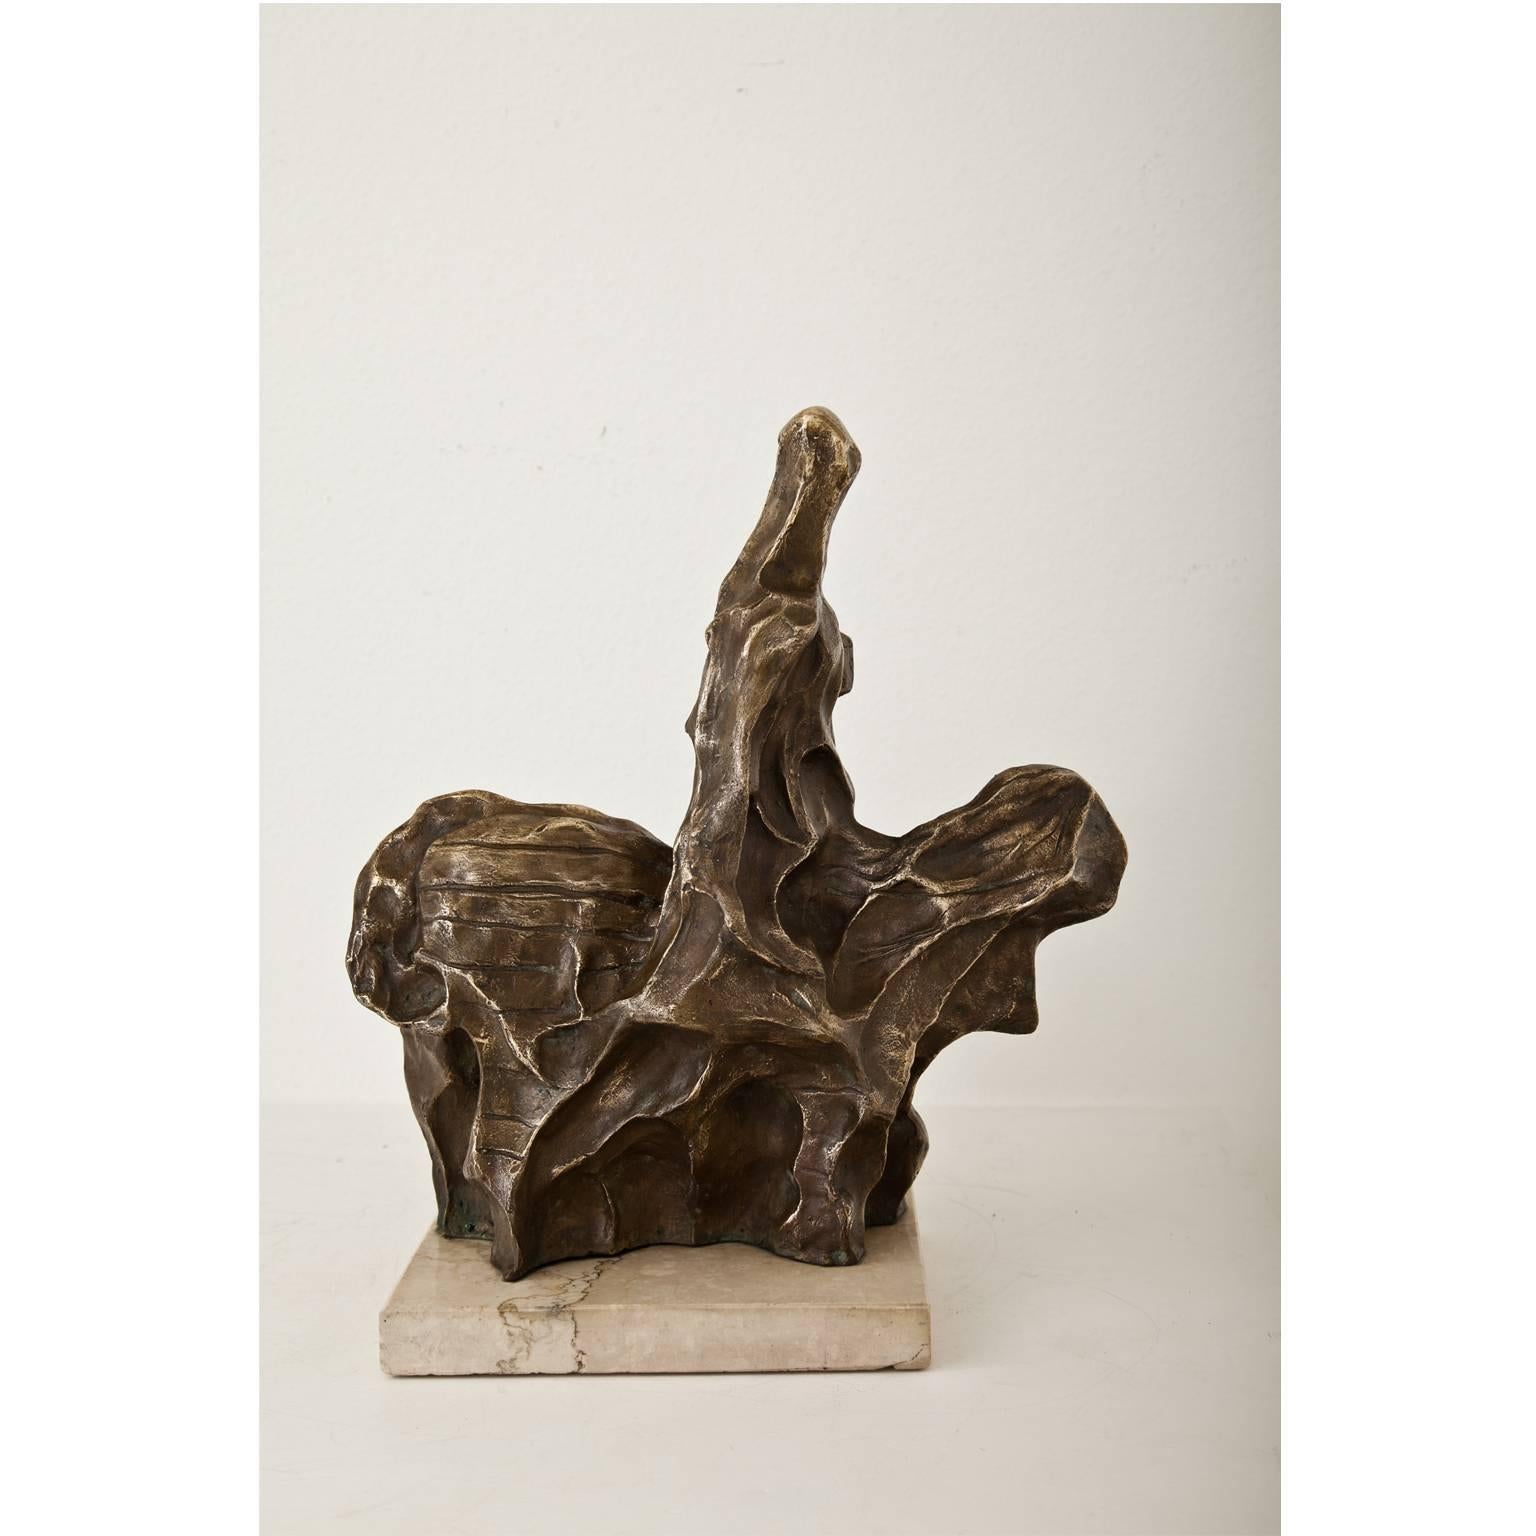 Kleine Bronzeskulptur eines Reiters auf seinem Pferd in einem abstrakten und weichen Design. Die Oberfläche des Reiters ist mit konkaven Vertiefungen strukturiert, das Pferd ist mit horizontalen Linien markiert. Die Skulptur steht auf einem